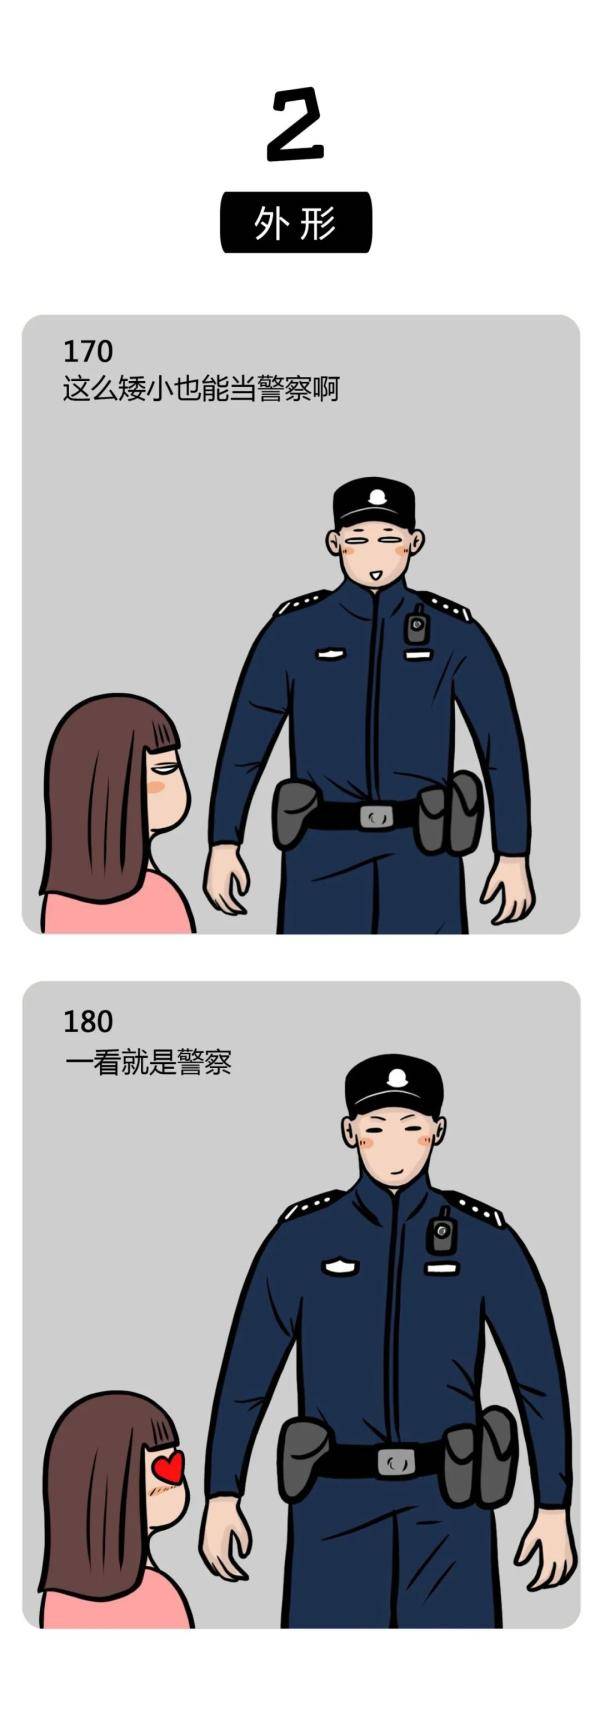 警察,个子都不会太矮 但也不是人人都身高马大180cm  还有不少在170cm